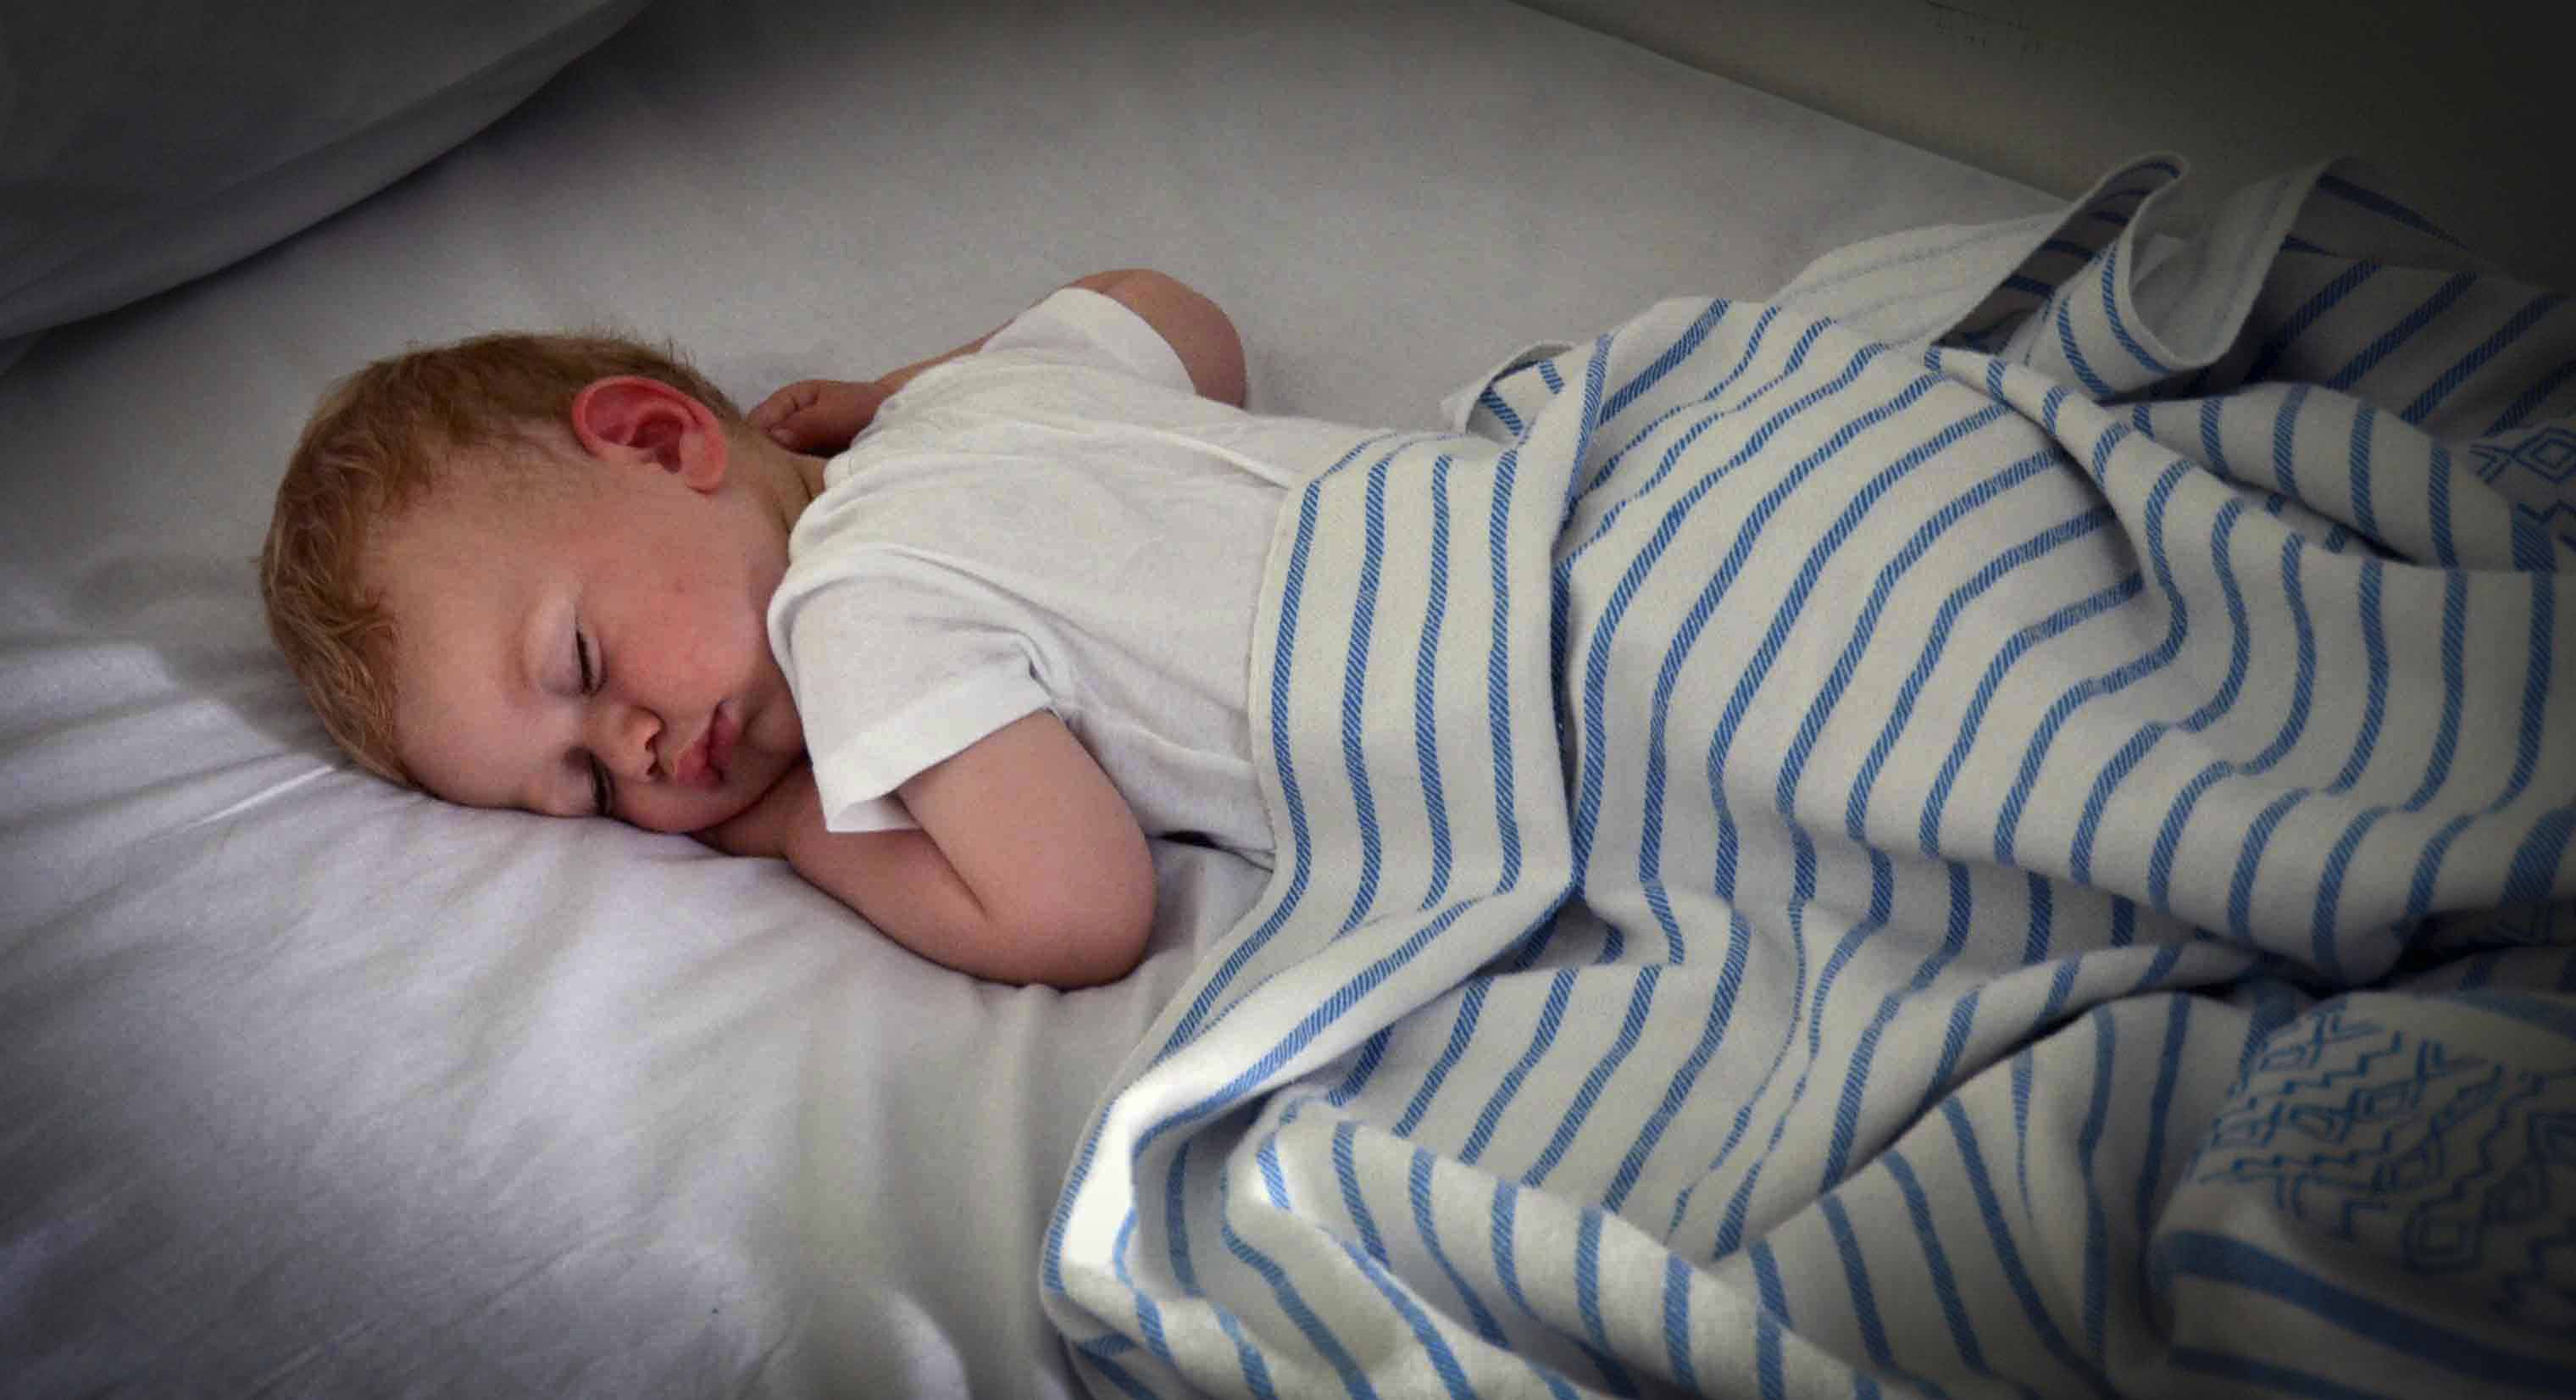 Cikos jūsu bērnam vajadzētu iet gulēt? Praktiskā rokasgrāmata PĒC TĀ VECUMA.